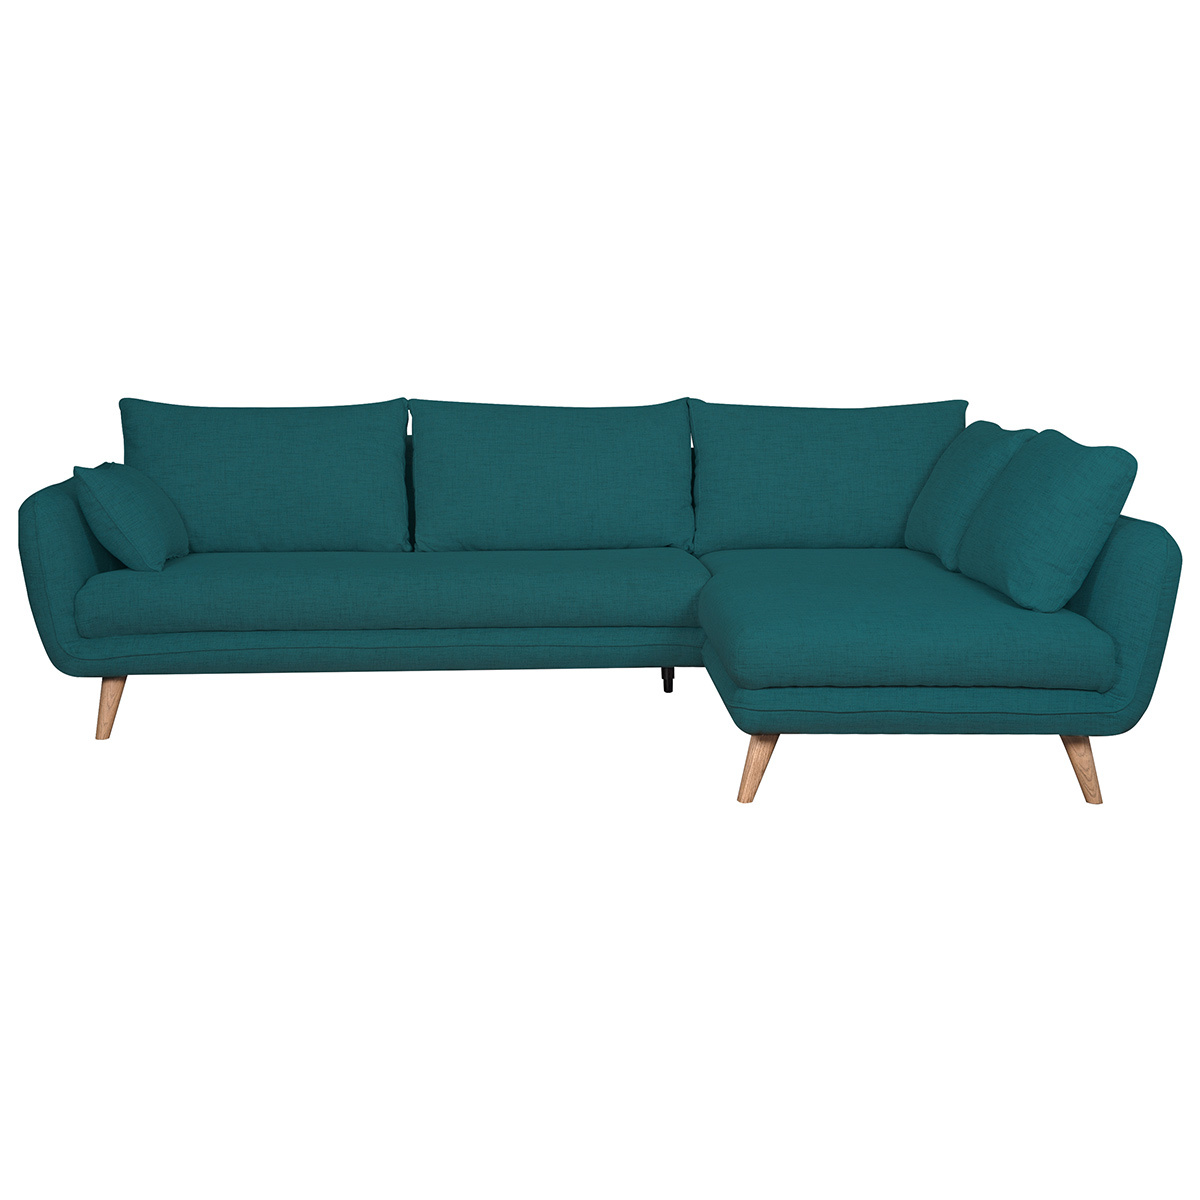 Canapé d'angle droit scandinave 5 places en tissu bleu paon et bois clair CREEP vue1